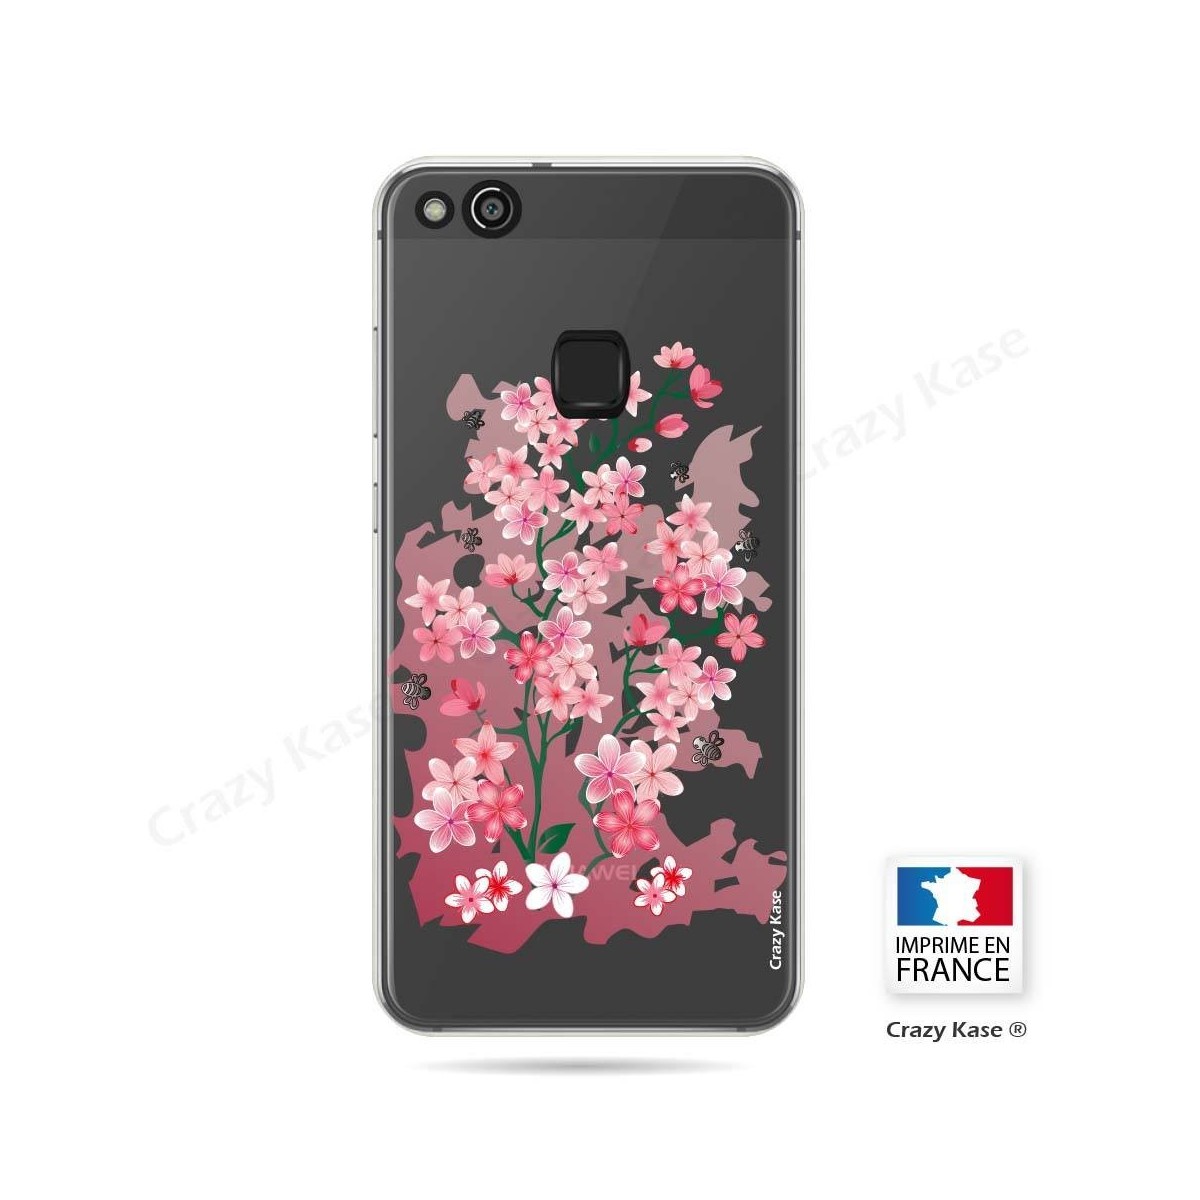 Coque Huawei P10 Lite souple motif Fleurs de Cerisier - Crazy Kase